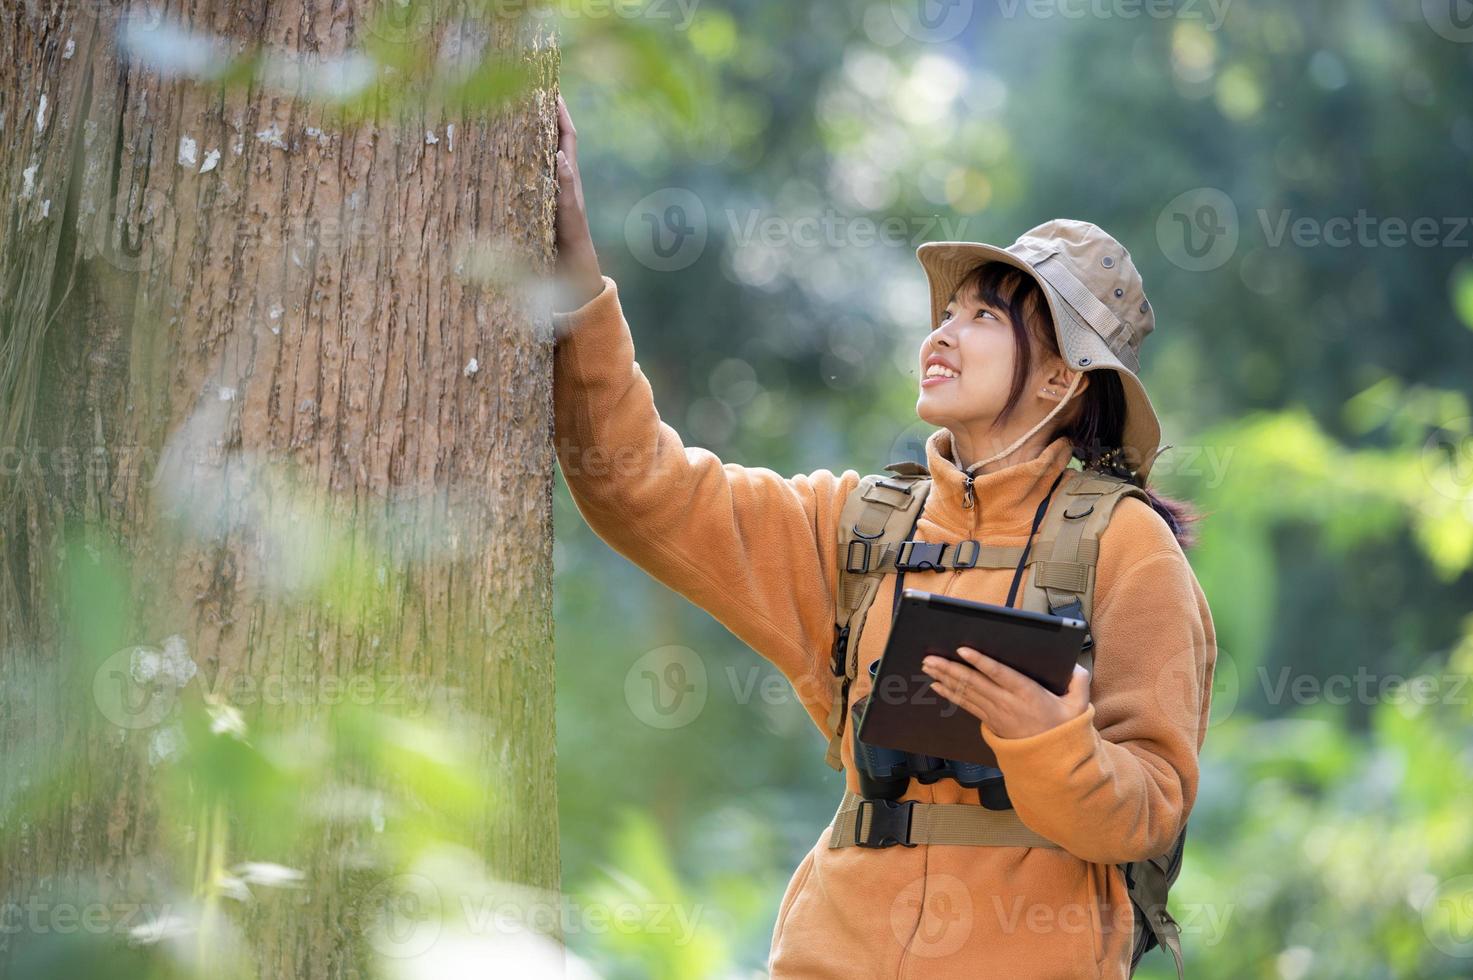 jeune femme touristique dans un manteau jaune étreignant un arbre dans la forêt d'amour écologique regardant la cime des arbres jeune femme asiatique examinant un grand arbre écologique photo